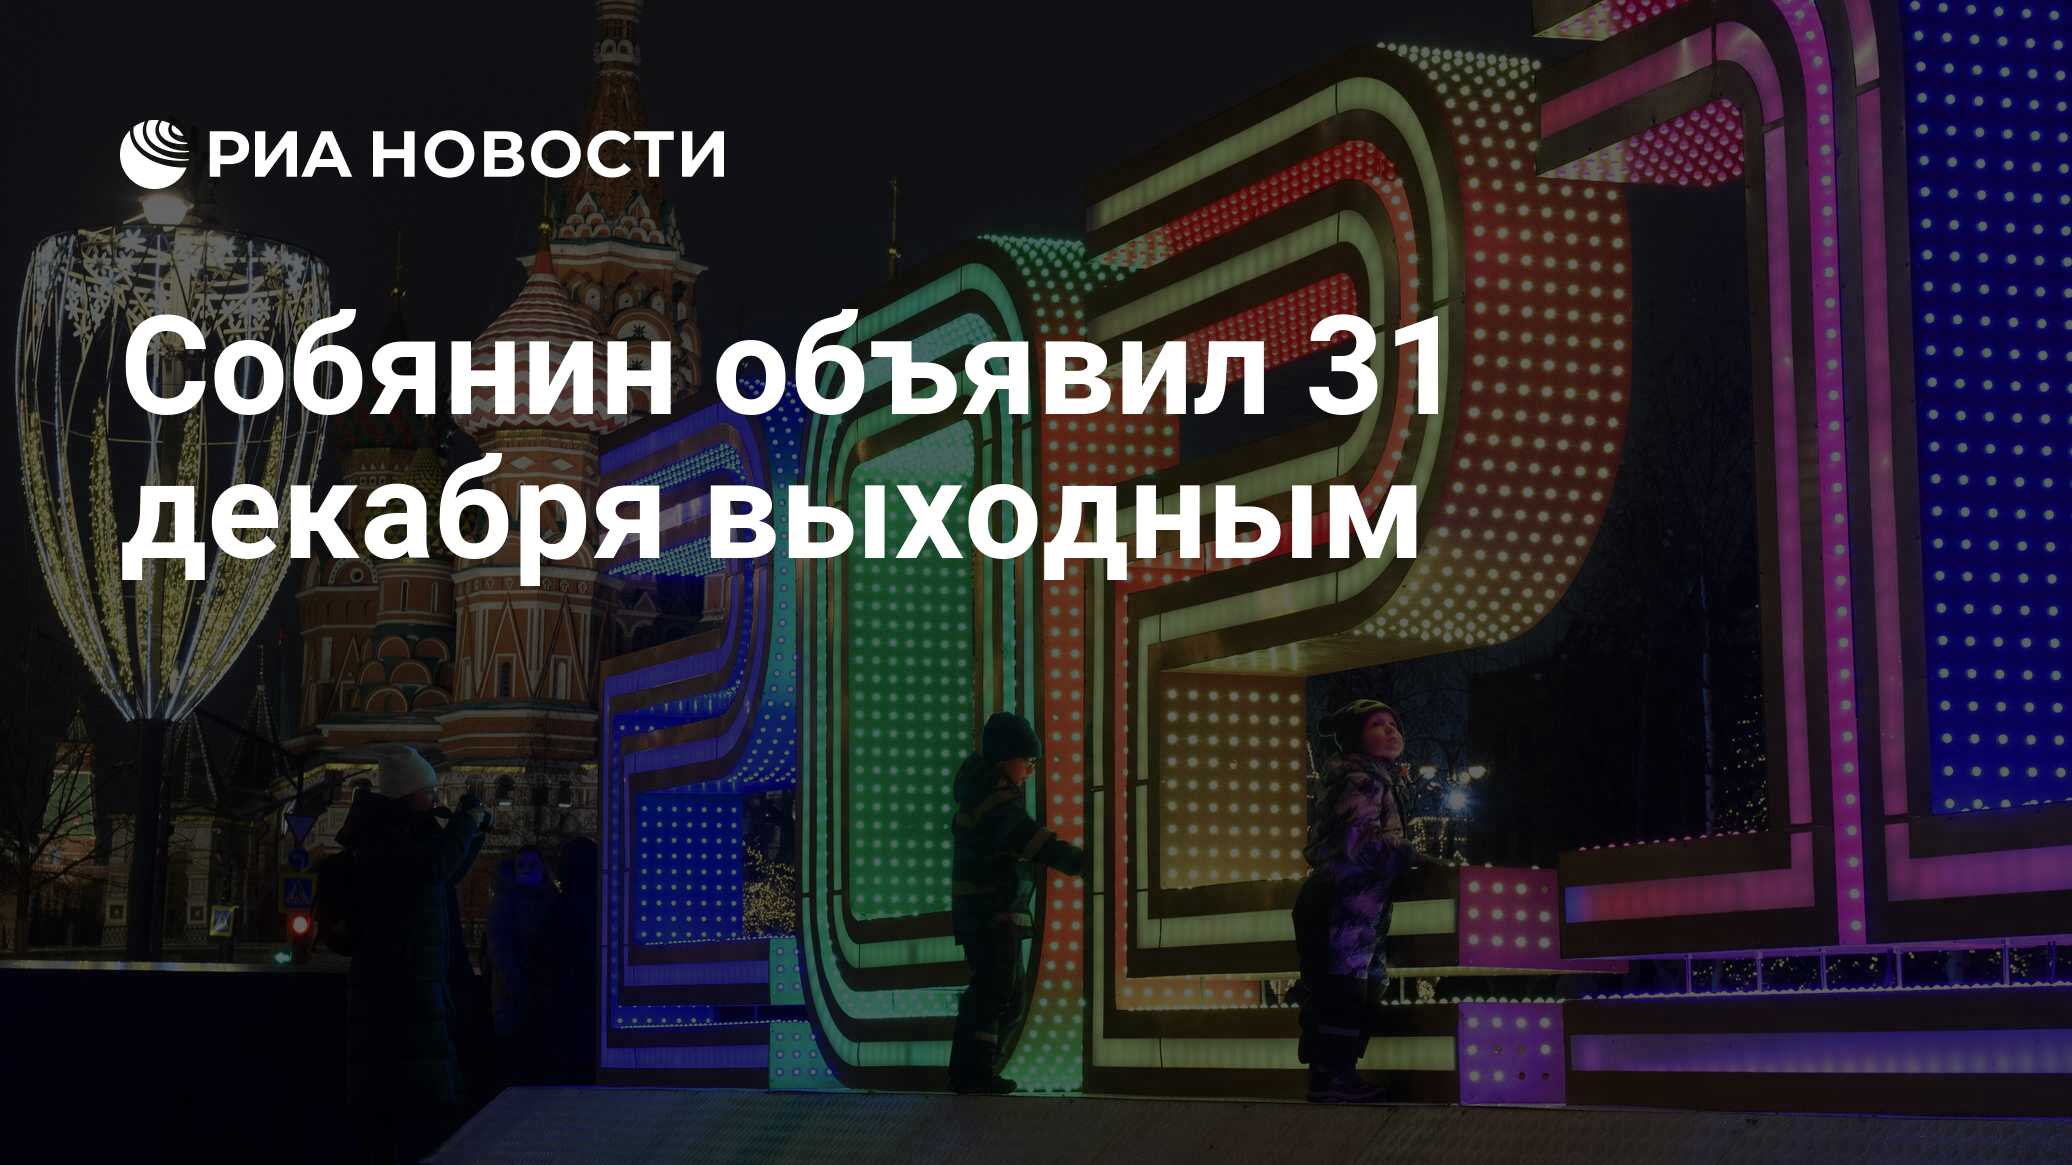 Собянин рекомендовал сделать 31 декабря выходным в Москве.